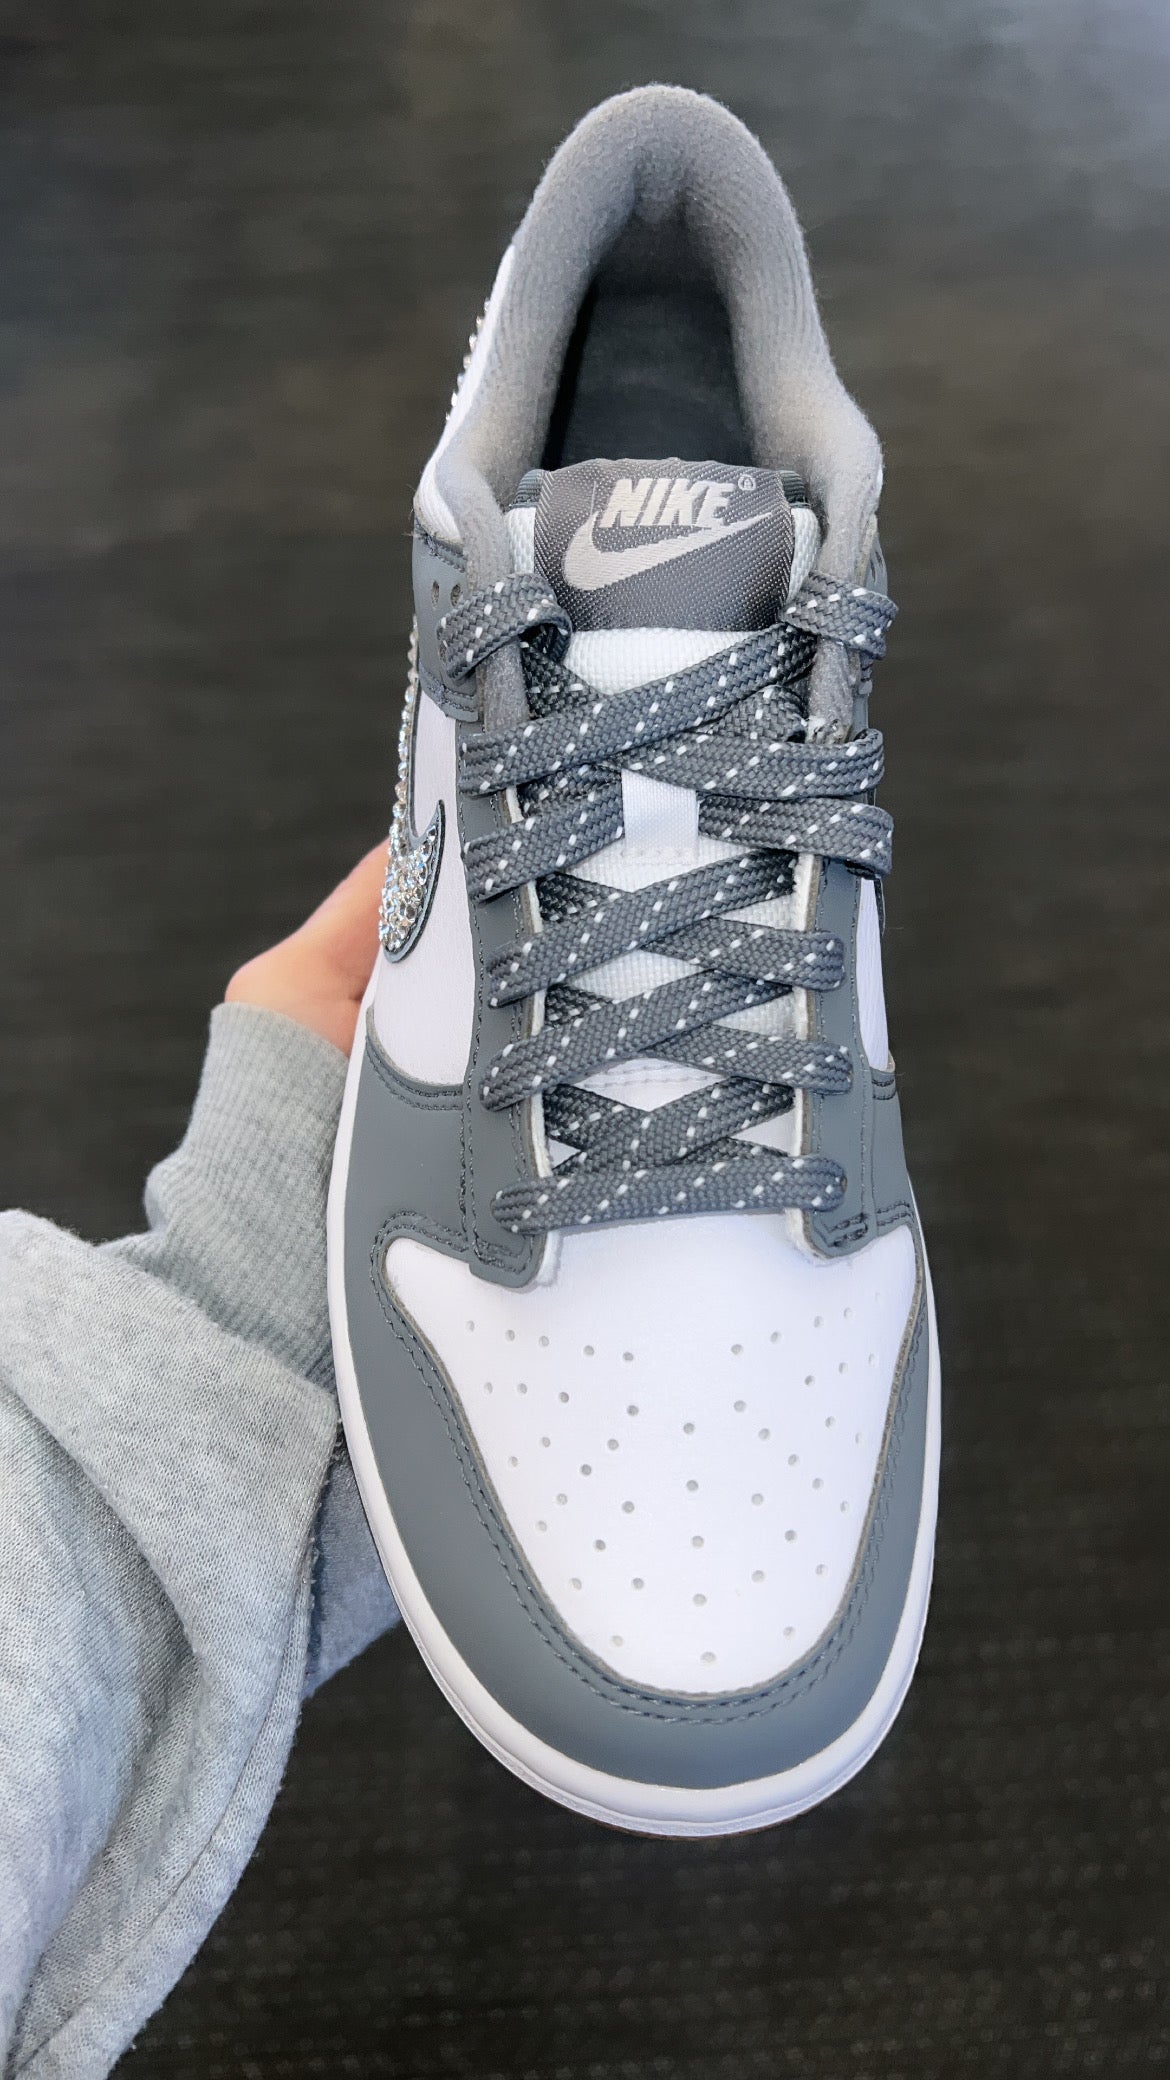 Nike Dunk Low "Smoke Grey" with Swarovski Crystals